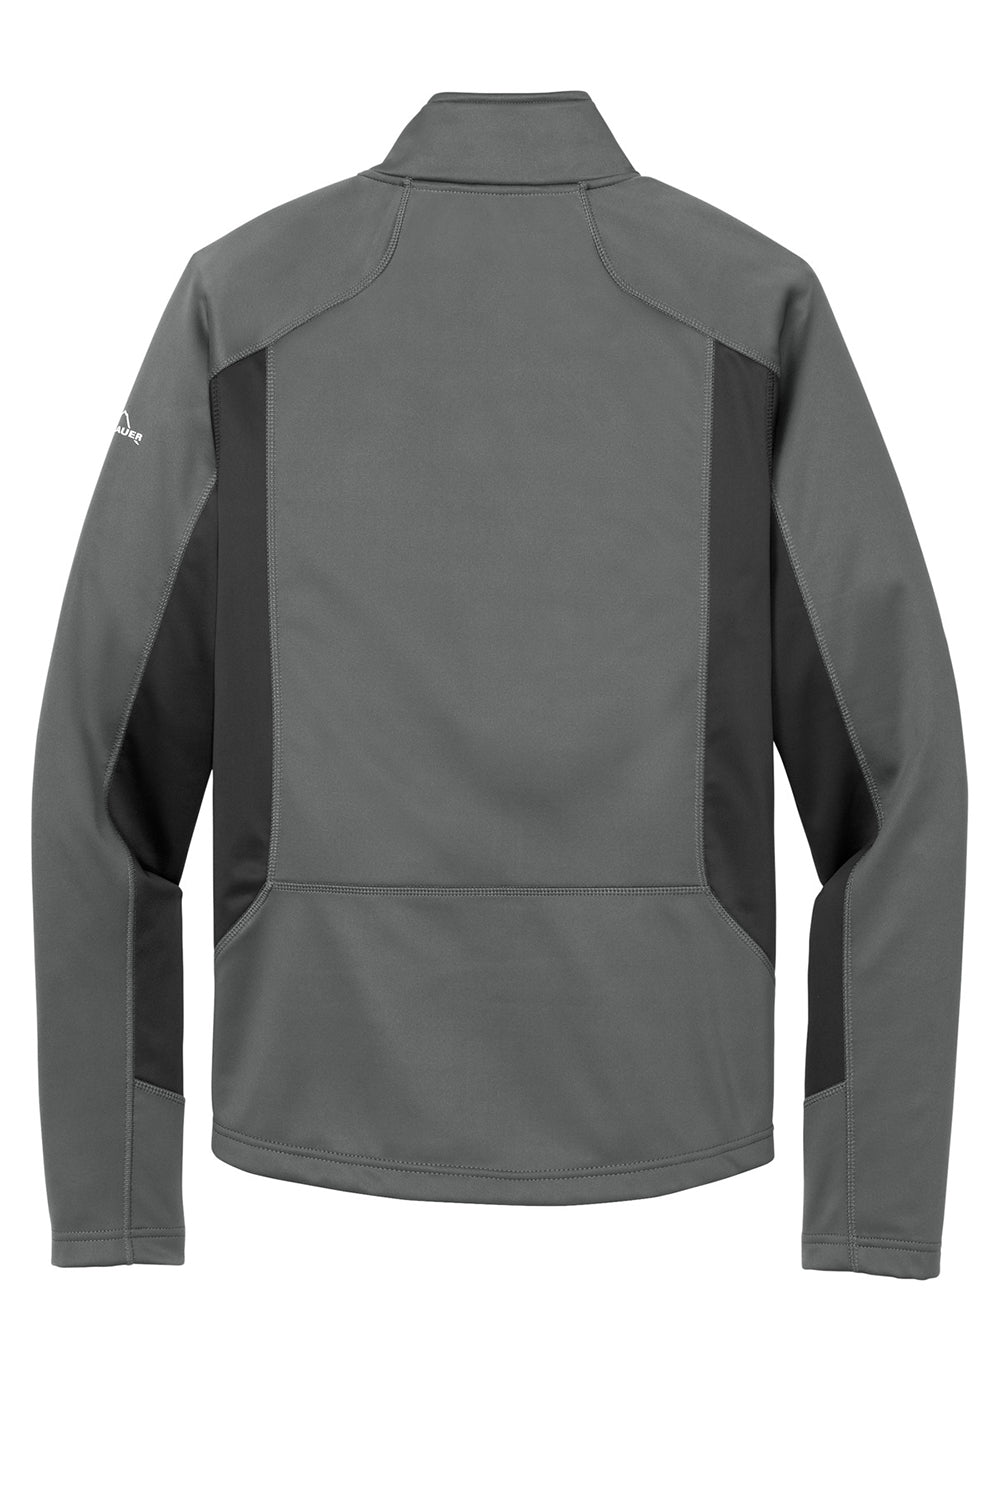 Eddie Bauer EB542 Mens Trail Water Resistant Full Zip Jacket Metal Grey Flat Back